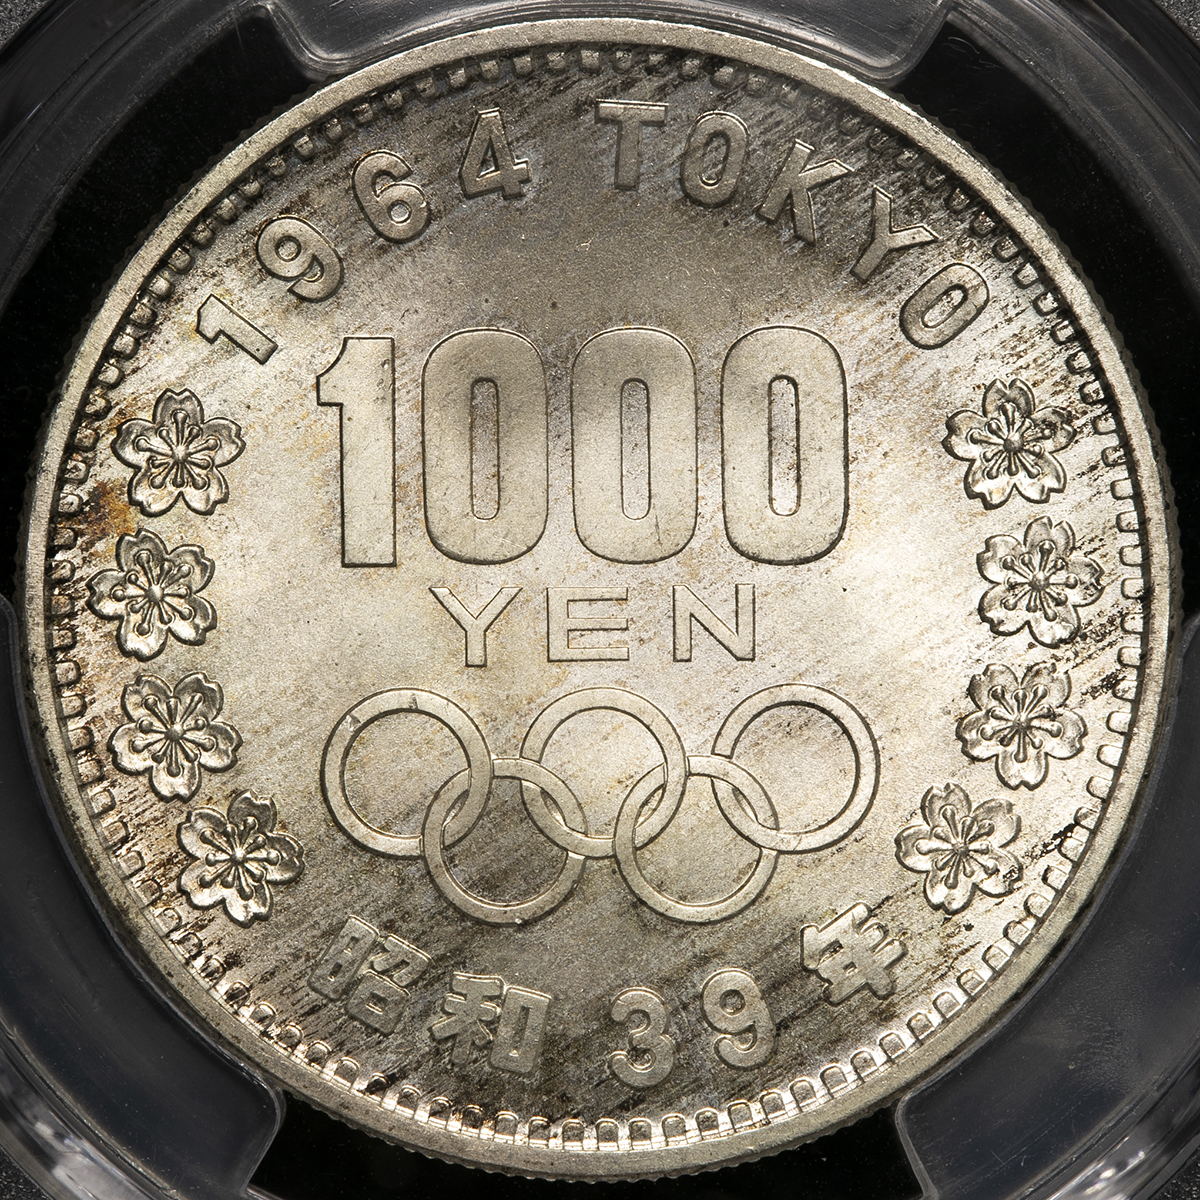 PCGS MS68 東京オリンピック記念1000円銀貨・昭和39年 - 貨幣